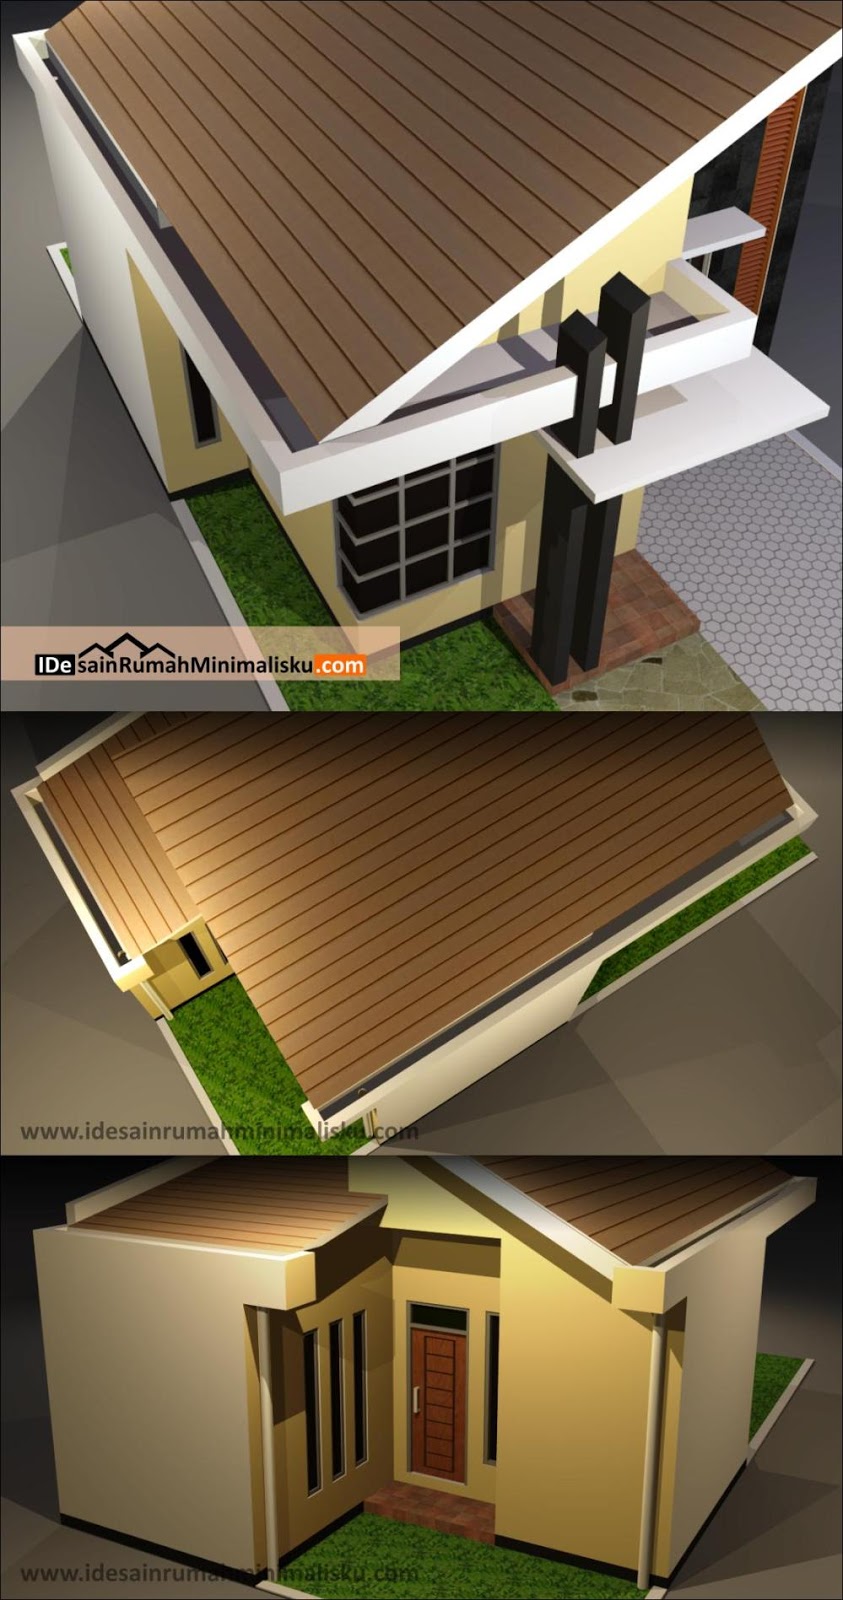 Gambar Disain Rumah Dan Bangunan Desain Rumah Minimalis Atap